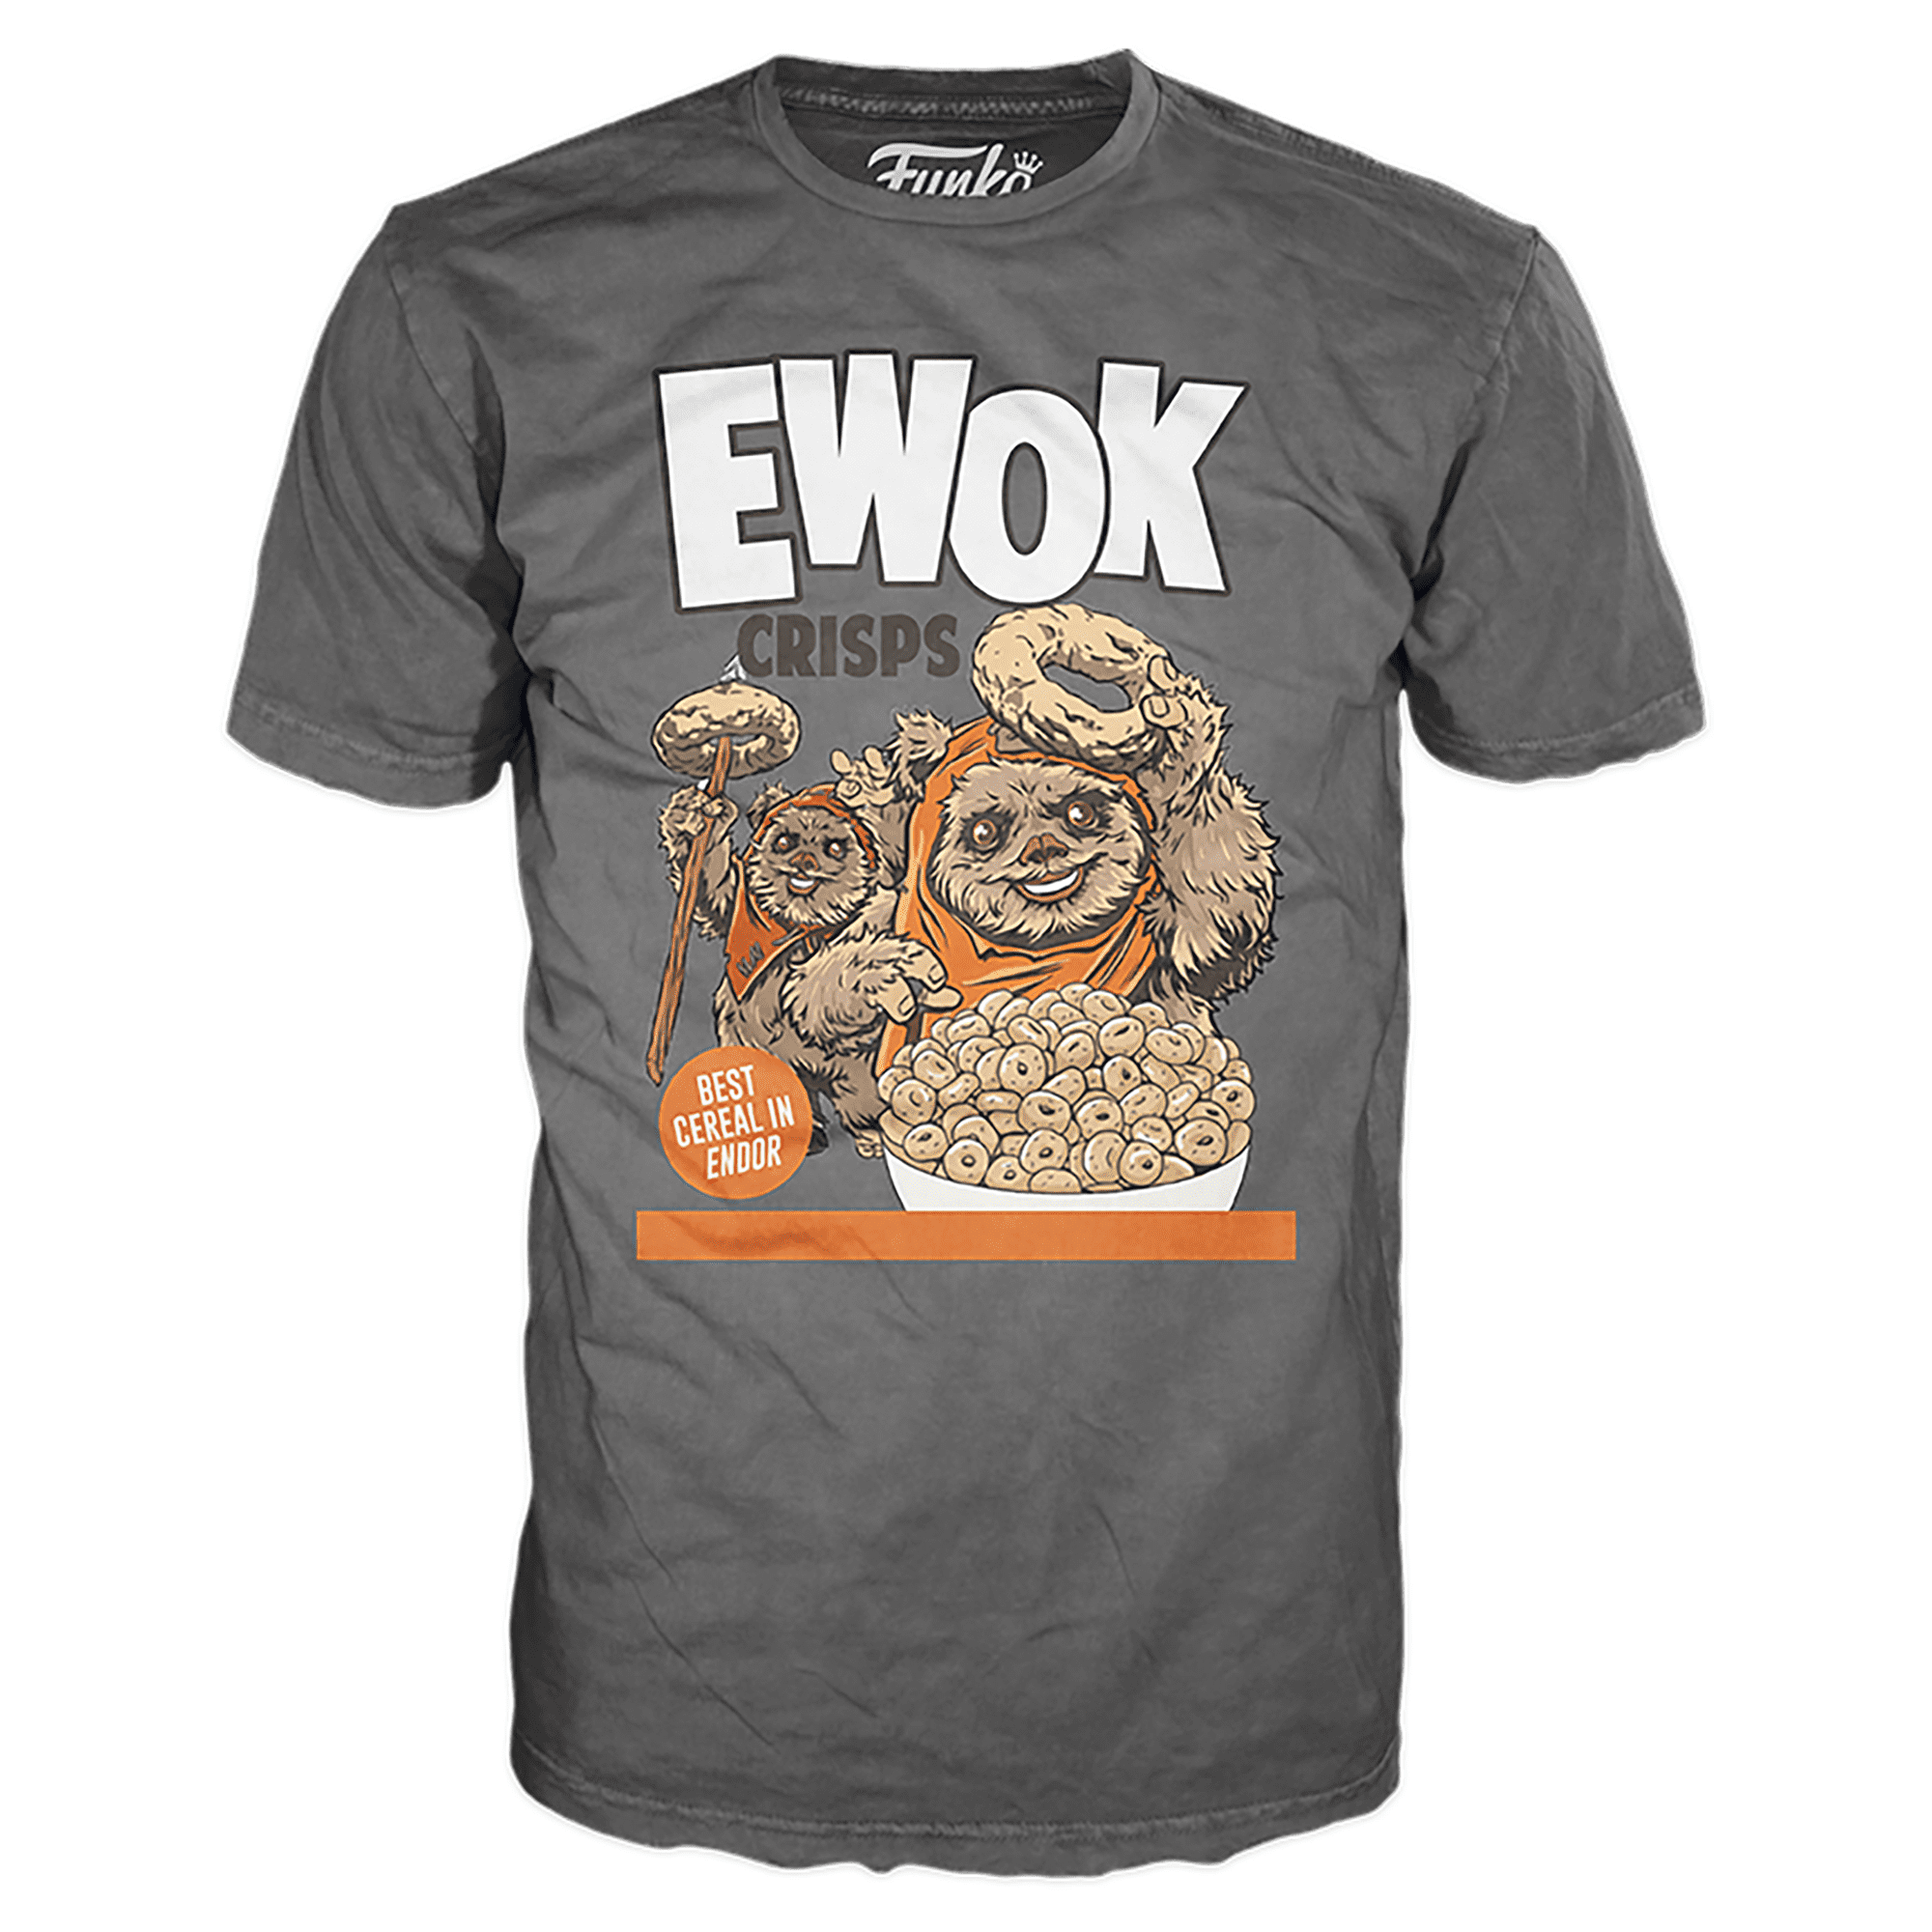 ewok shirt